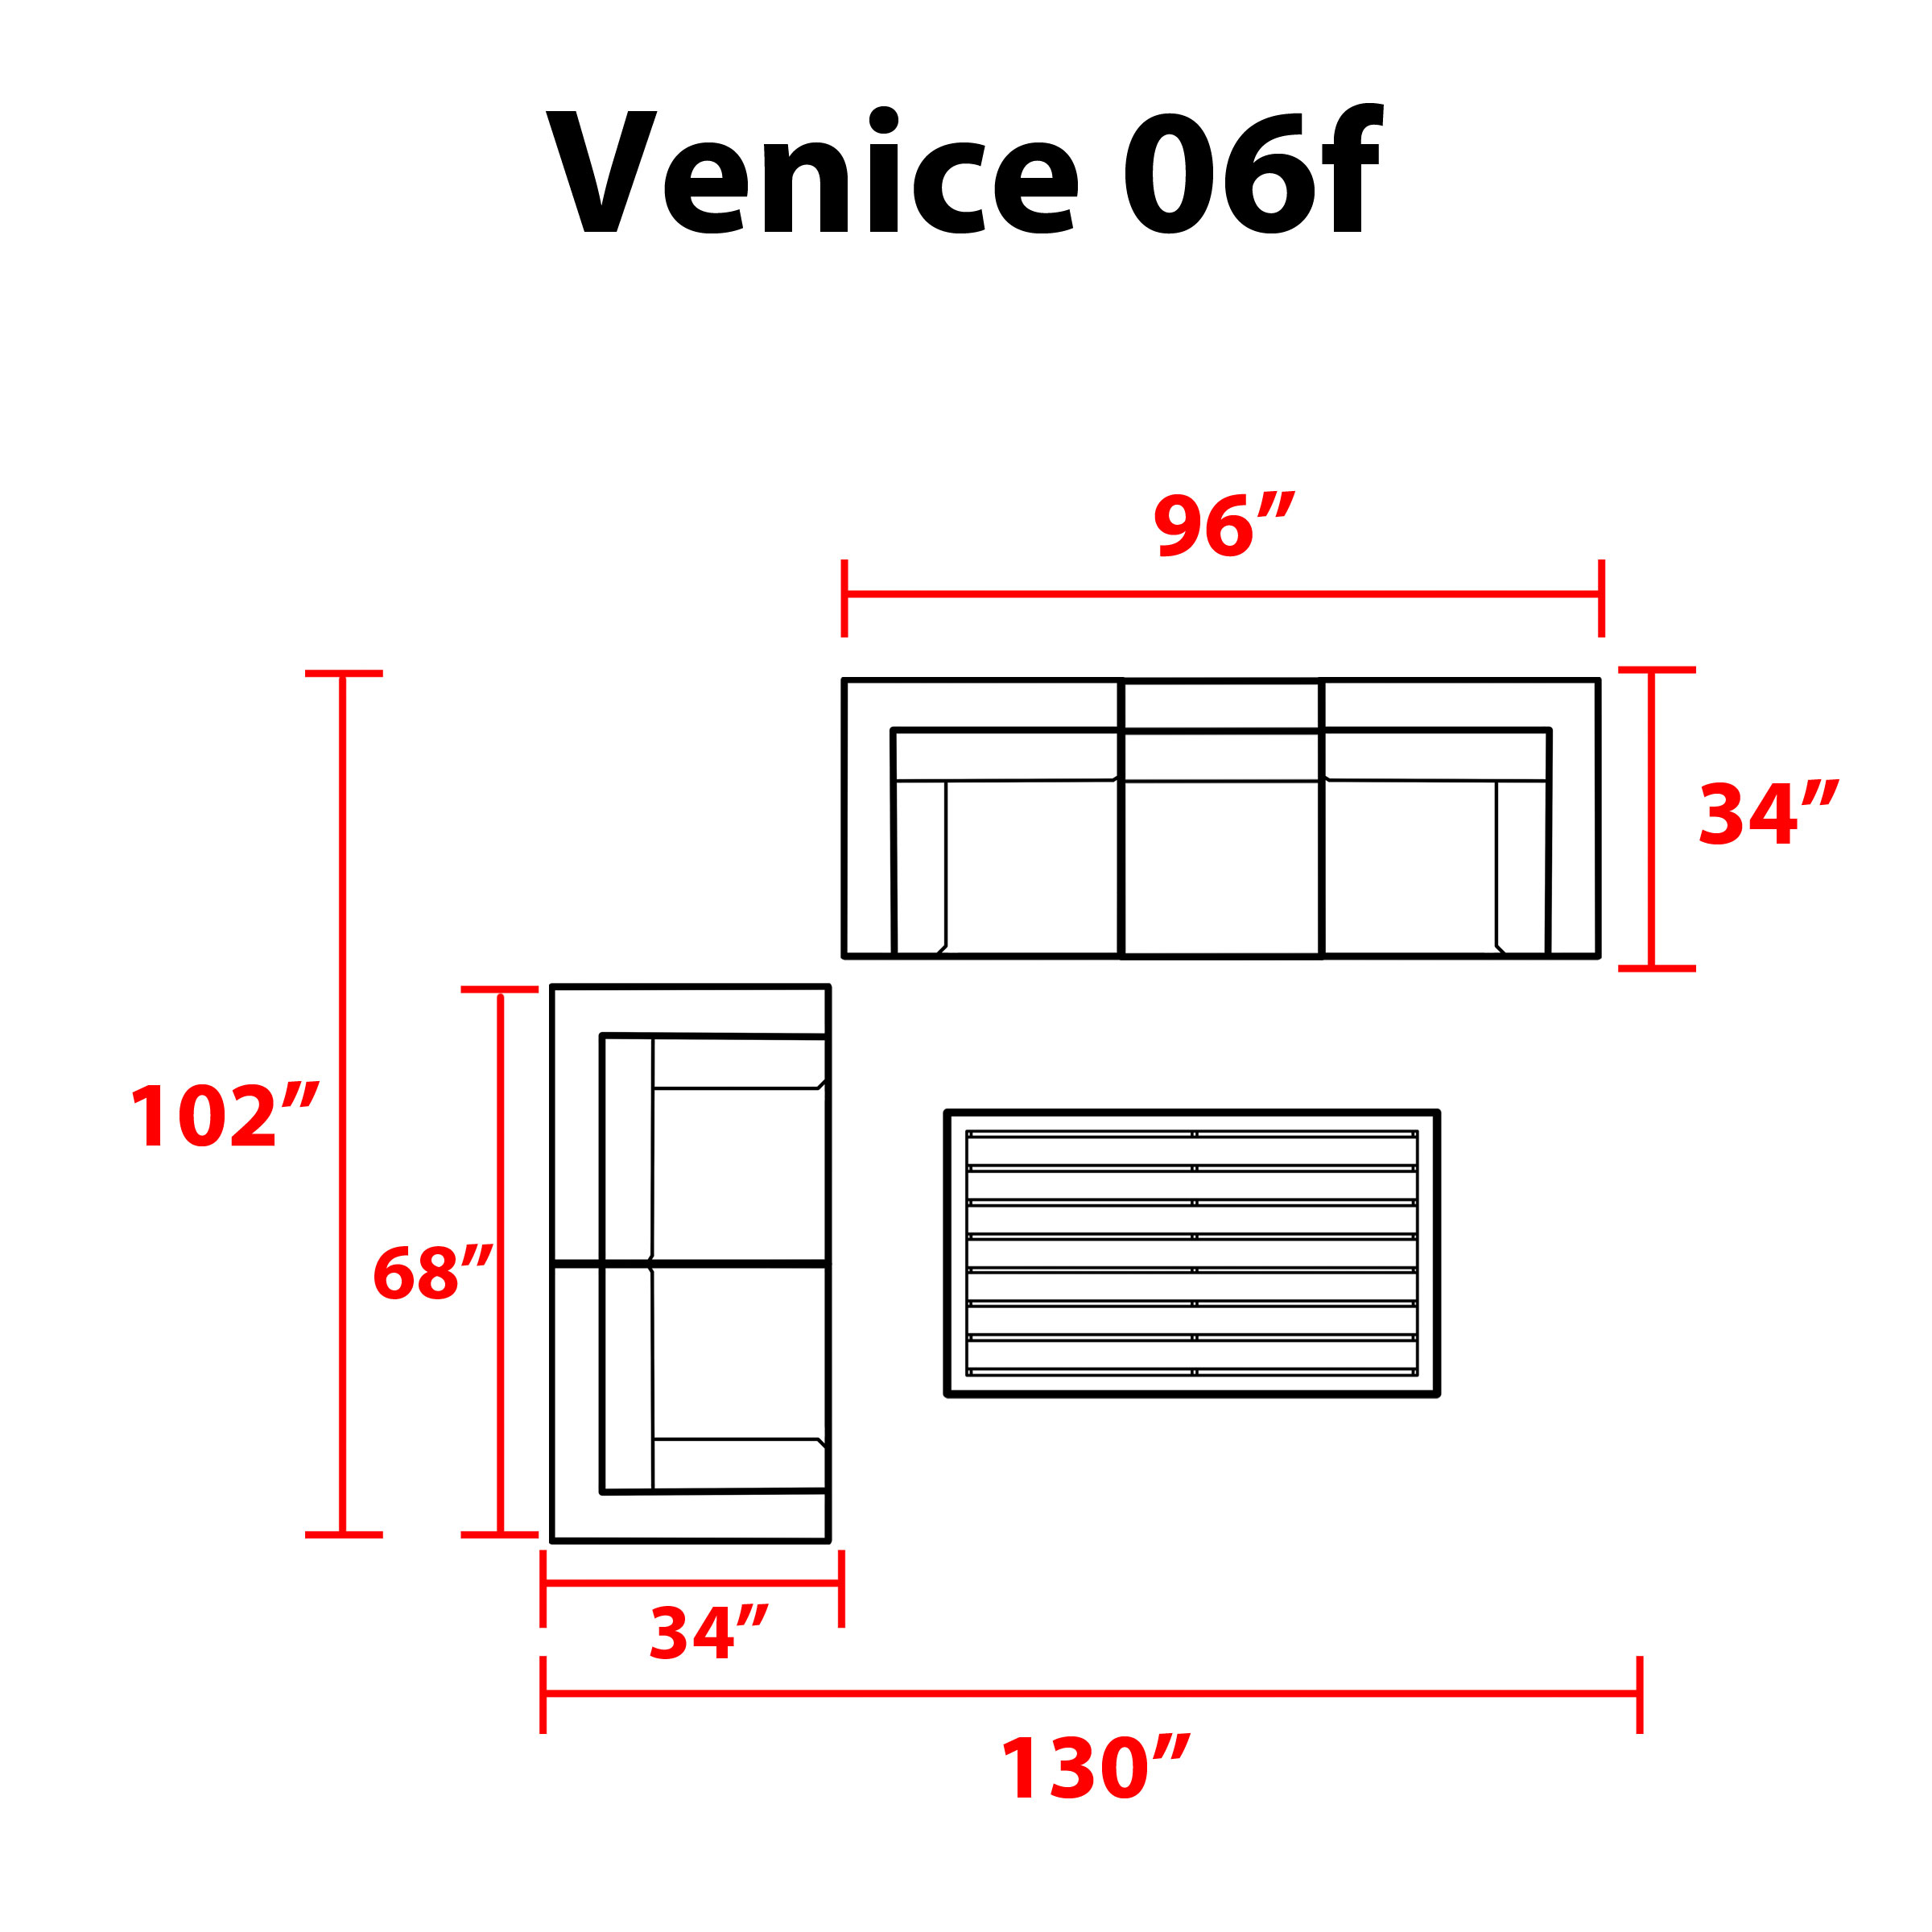 Venice 6 Piece Outdoor Wicker Patio Furniture Set 06f - TK Classics